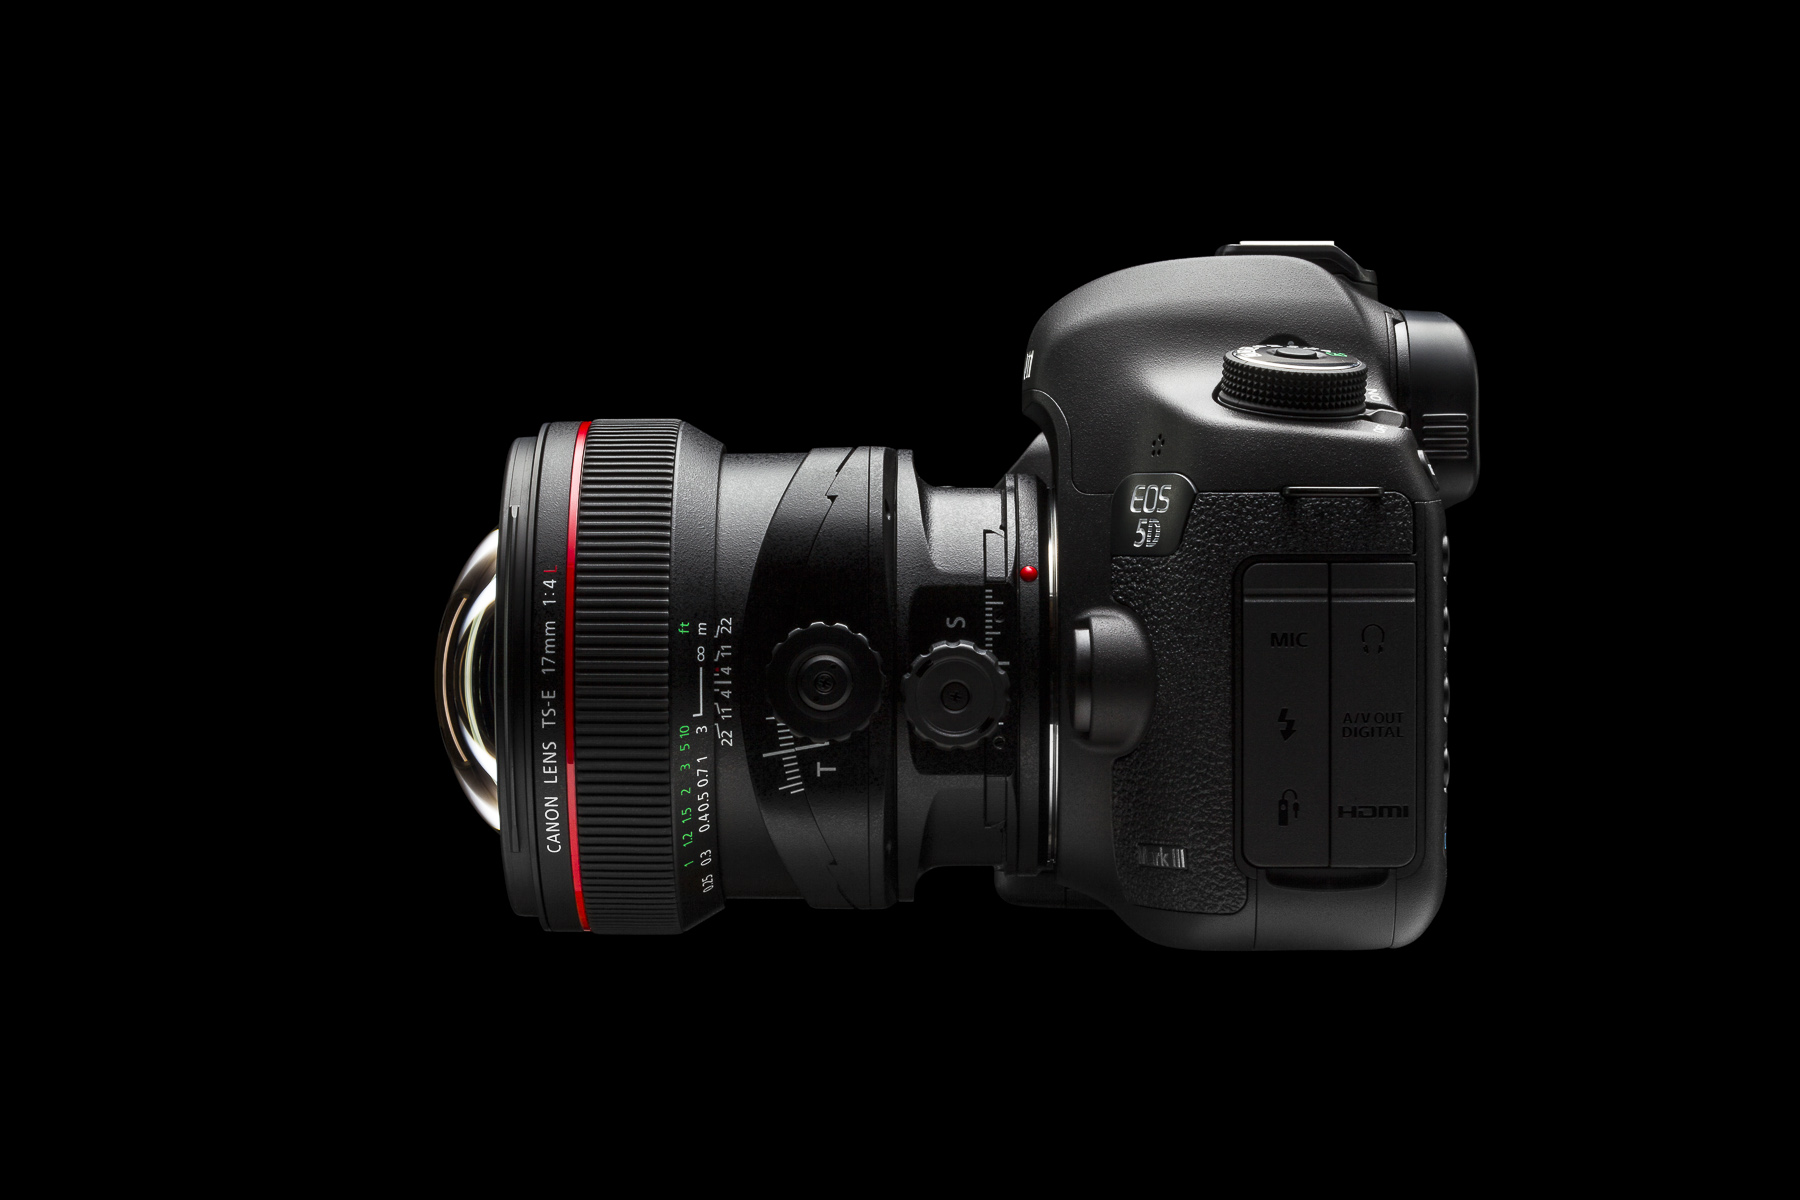 Canon-EOS-5D-Mark-III-TS-E-17-4